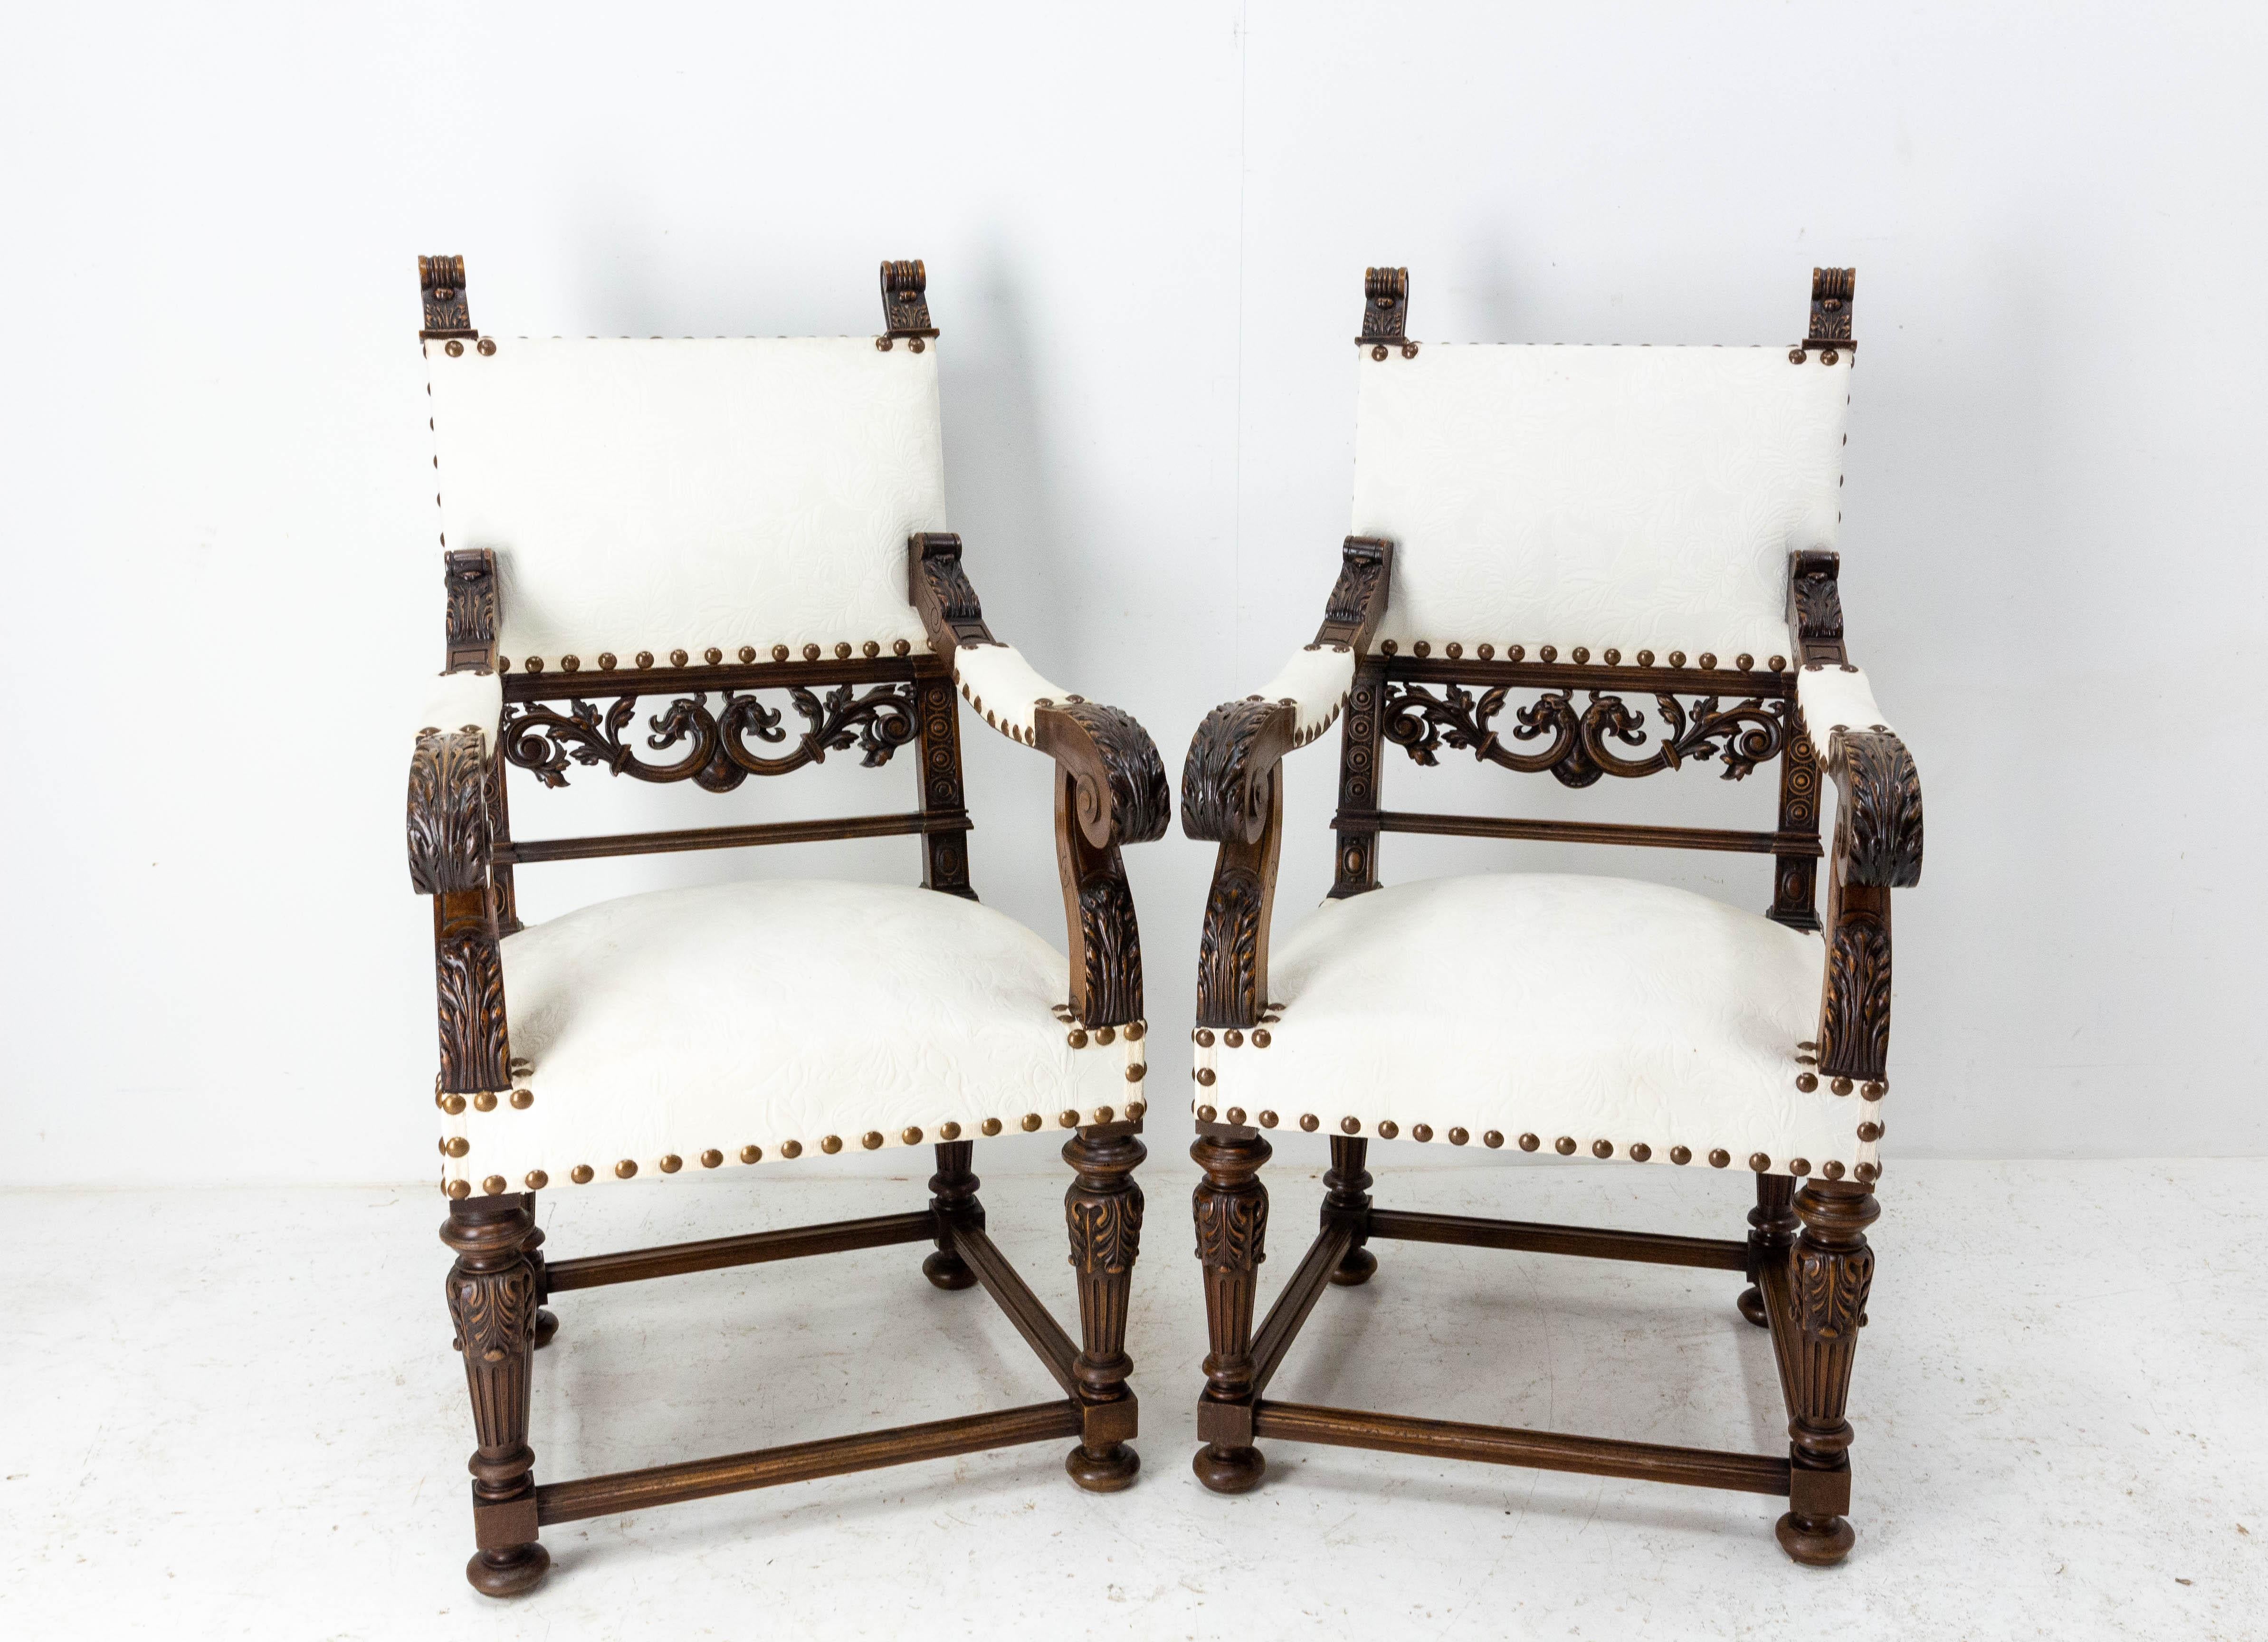 Paar Französisch fauteuils, offene Sessel Seite oder Schreibtisch Stühle Louis XIII Wiederbelebung,
Sehr feine Holzschnitzarbeiten
Wird wiederhergestellt.
um 1850.
Sehr guter Zustand.
Die Rahmen sind solide und fest.

Versand:
L129 P61 H112